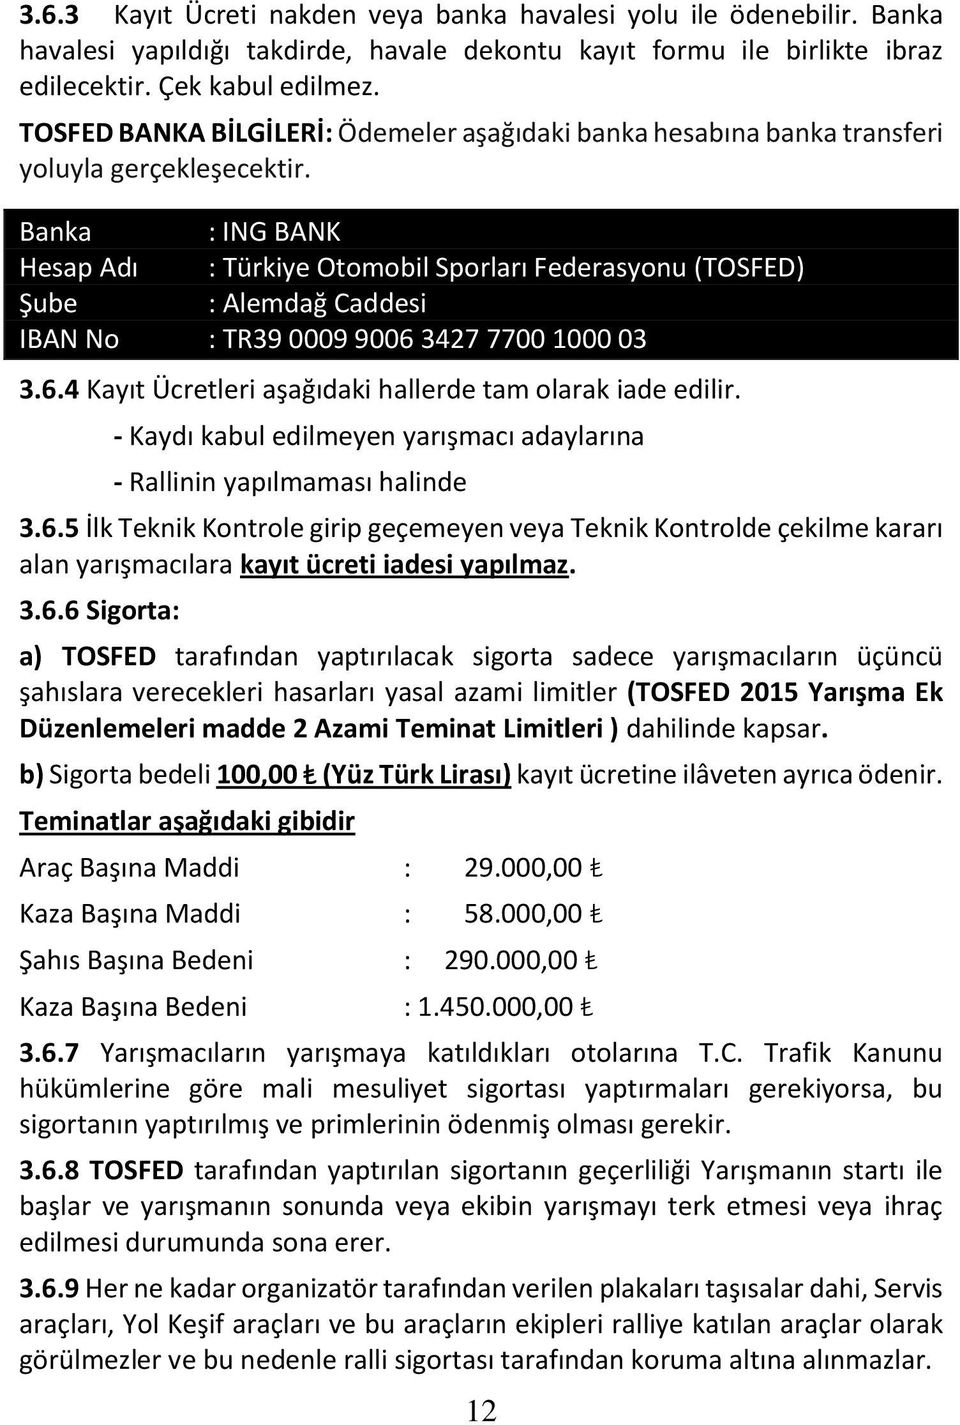 Banka : ING BANK Hesap Adı : Türkiye Otomobil Sporları Federasyonu (TOSFED) Şube : Alemdağ Caddesi IBAN No : TR39 0009 9006 3427 7700 1000 03 3.6.4 Kayıt Ücretleri aşağıdaki hallerde tam olarak iade edilir.